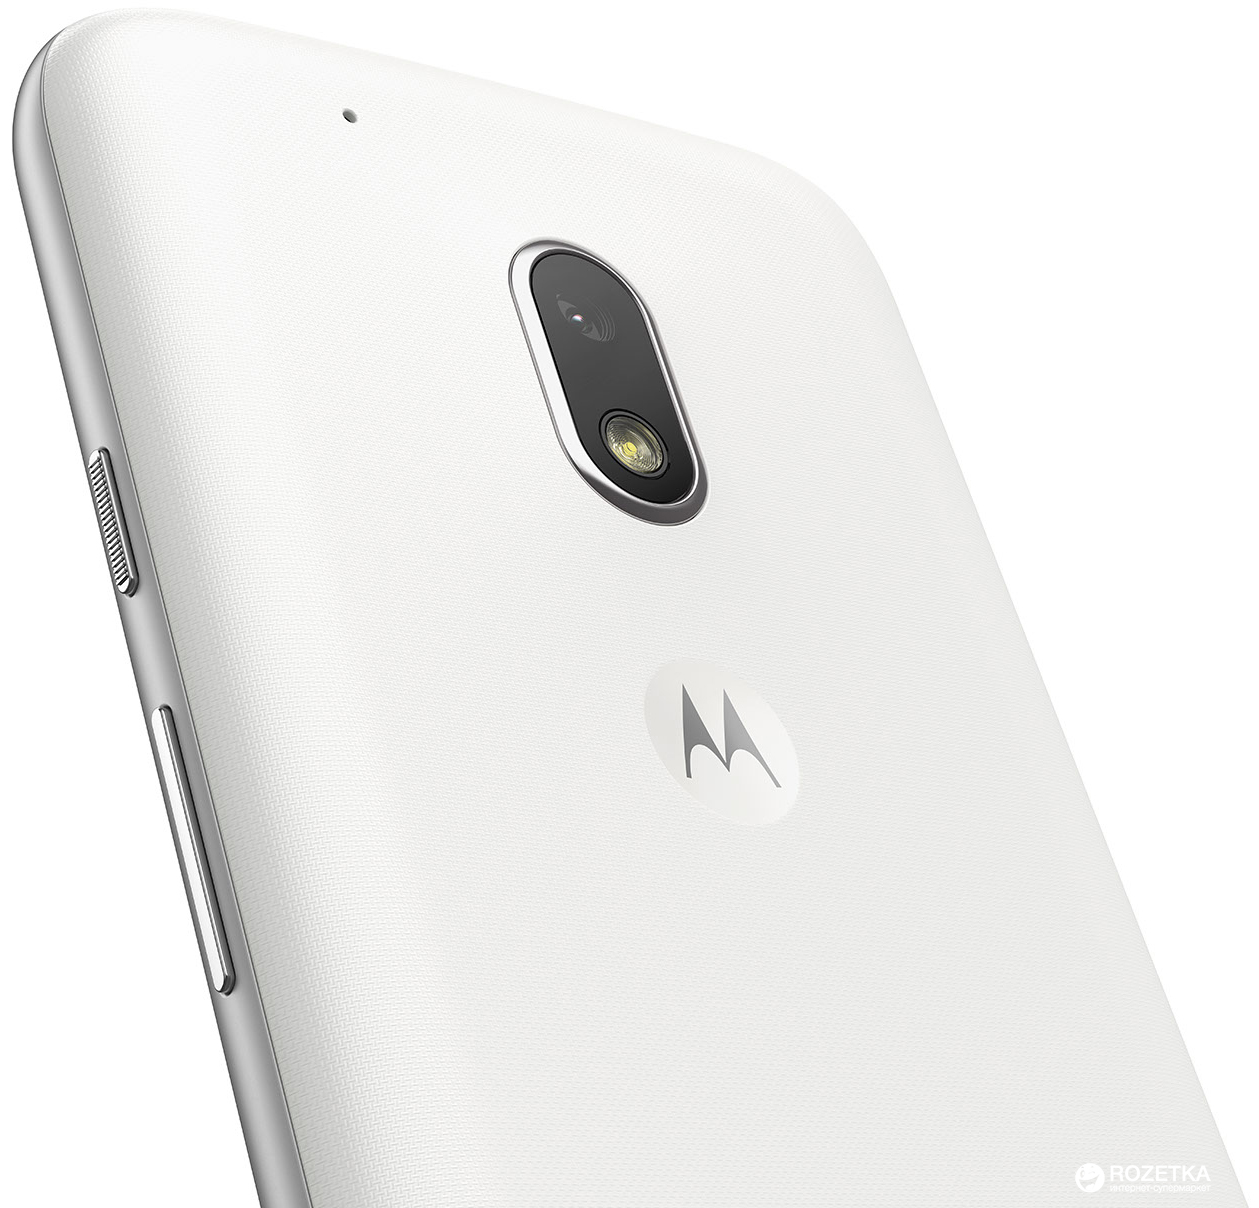 Bat-eira Motorola Moto G4 Play Xt1600 Gk40 Nova em Promoção na Americanas